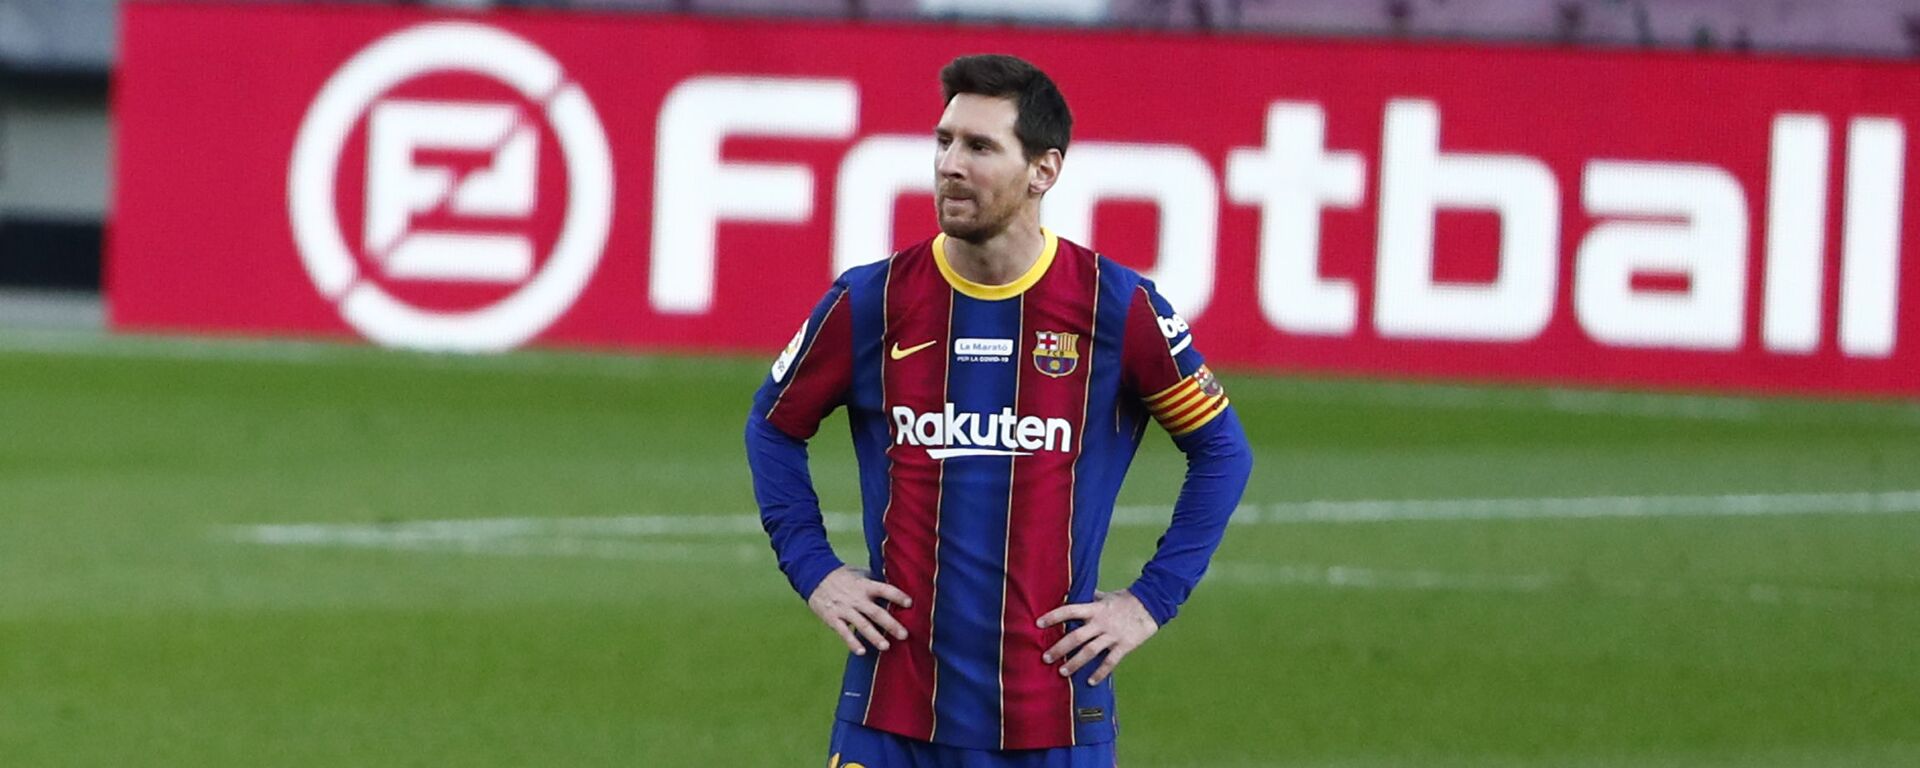 Leo Messi, futbolista argentino - اسپوتنیک افغانستان  , 1920, 13.02.2021